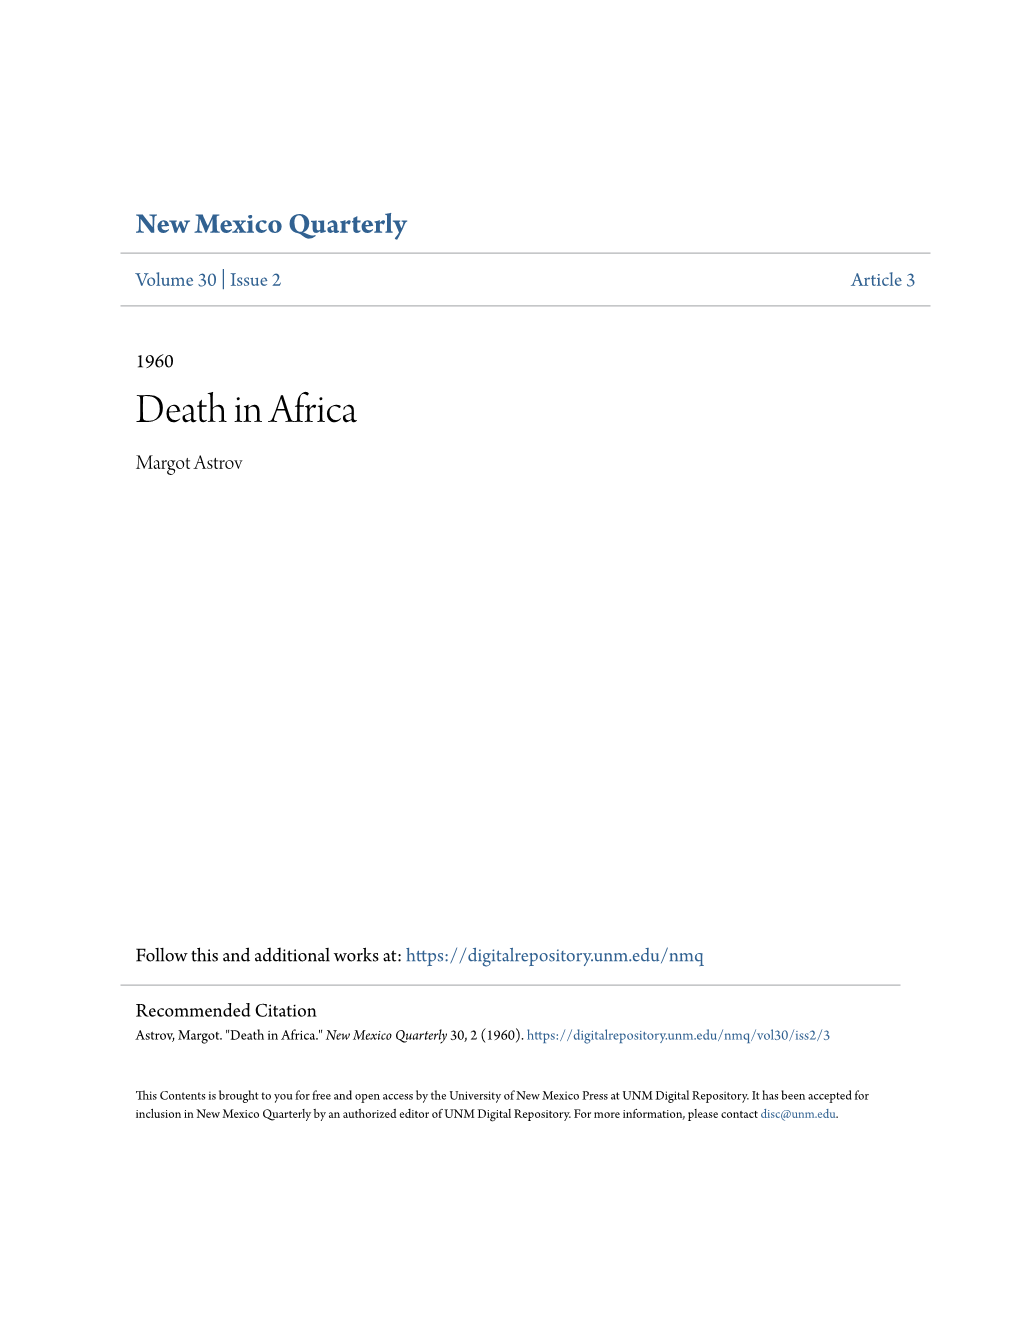 Death in Africa Margot Astrov